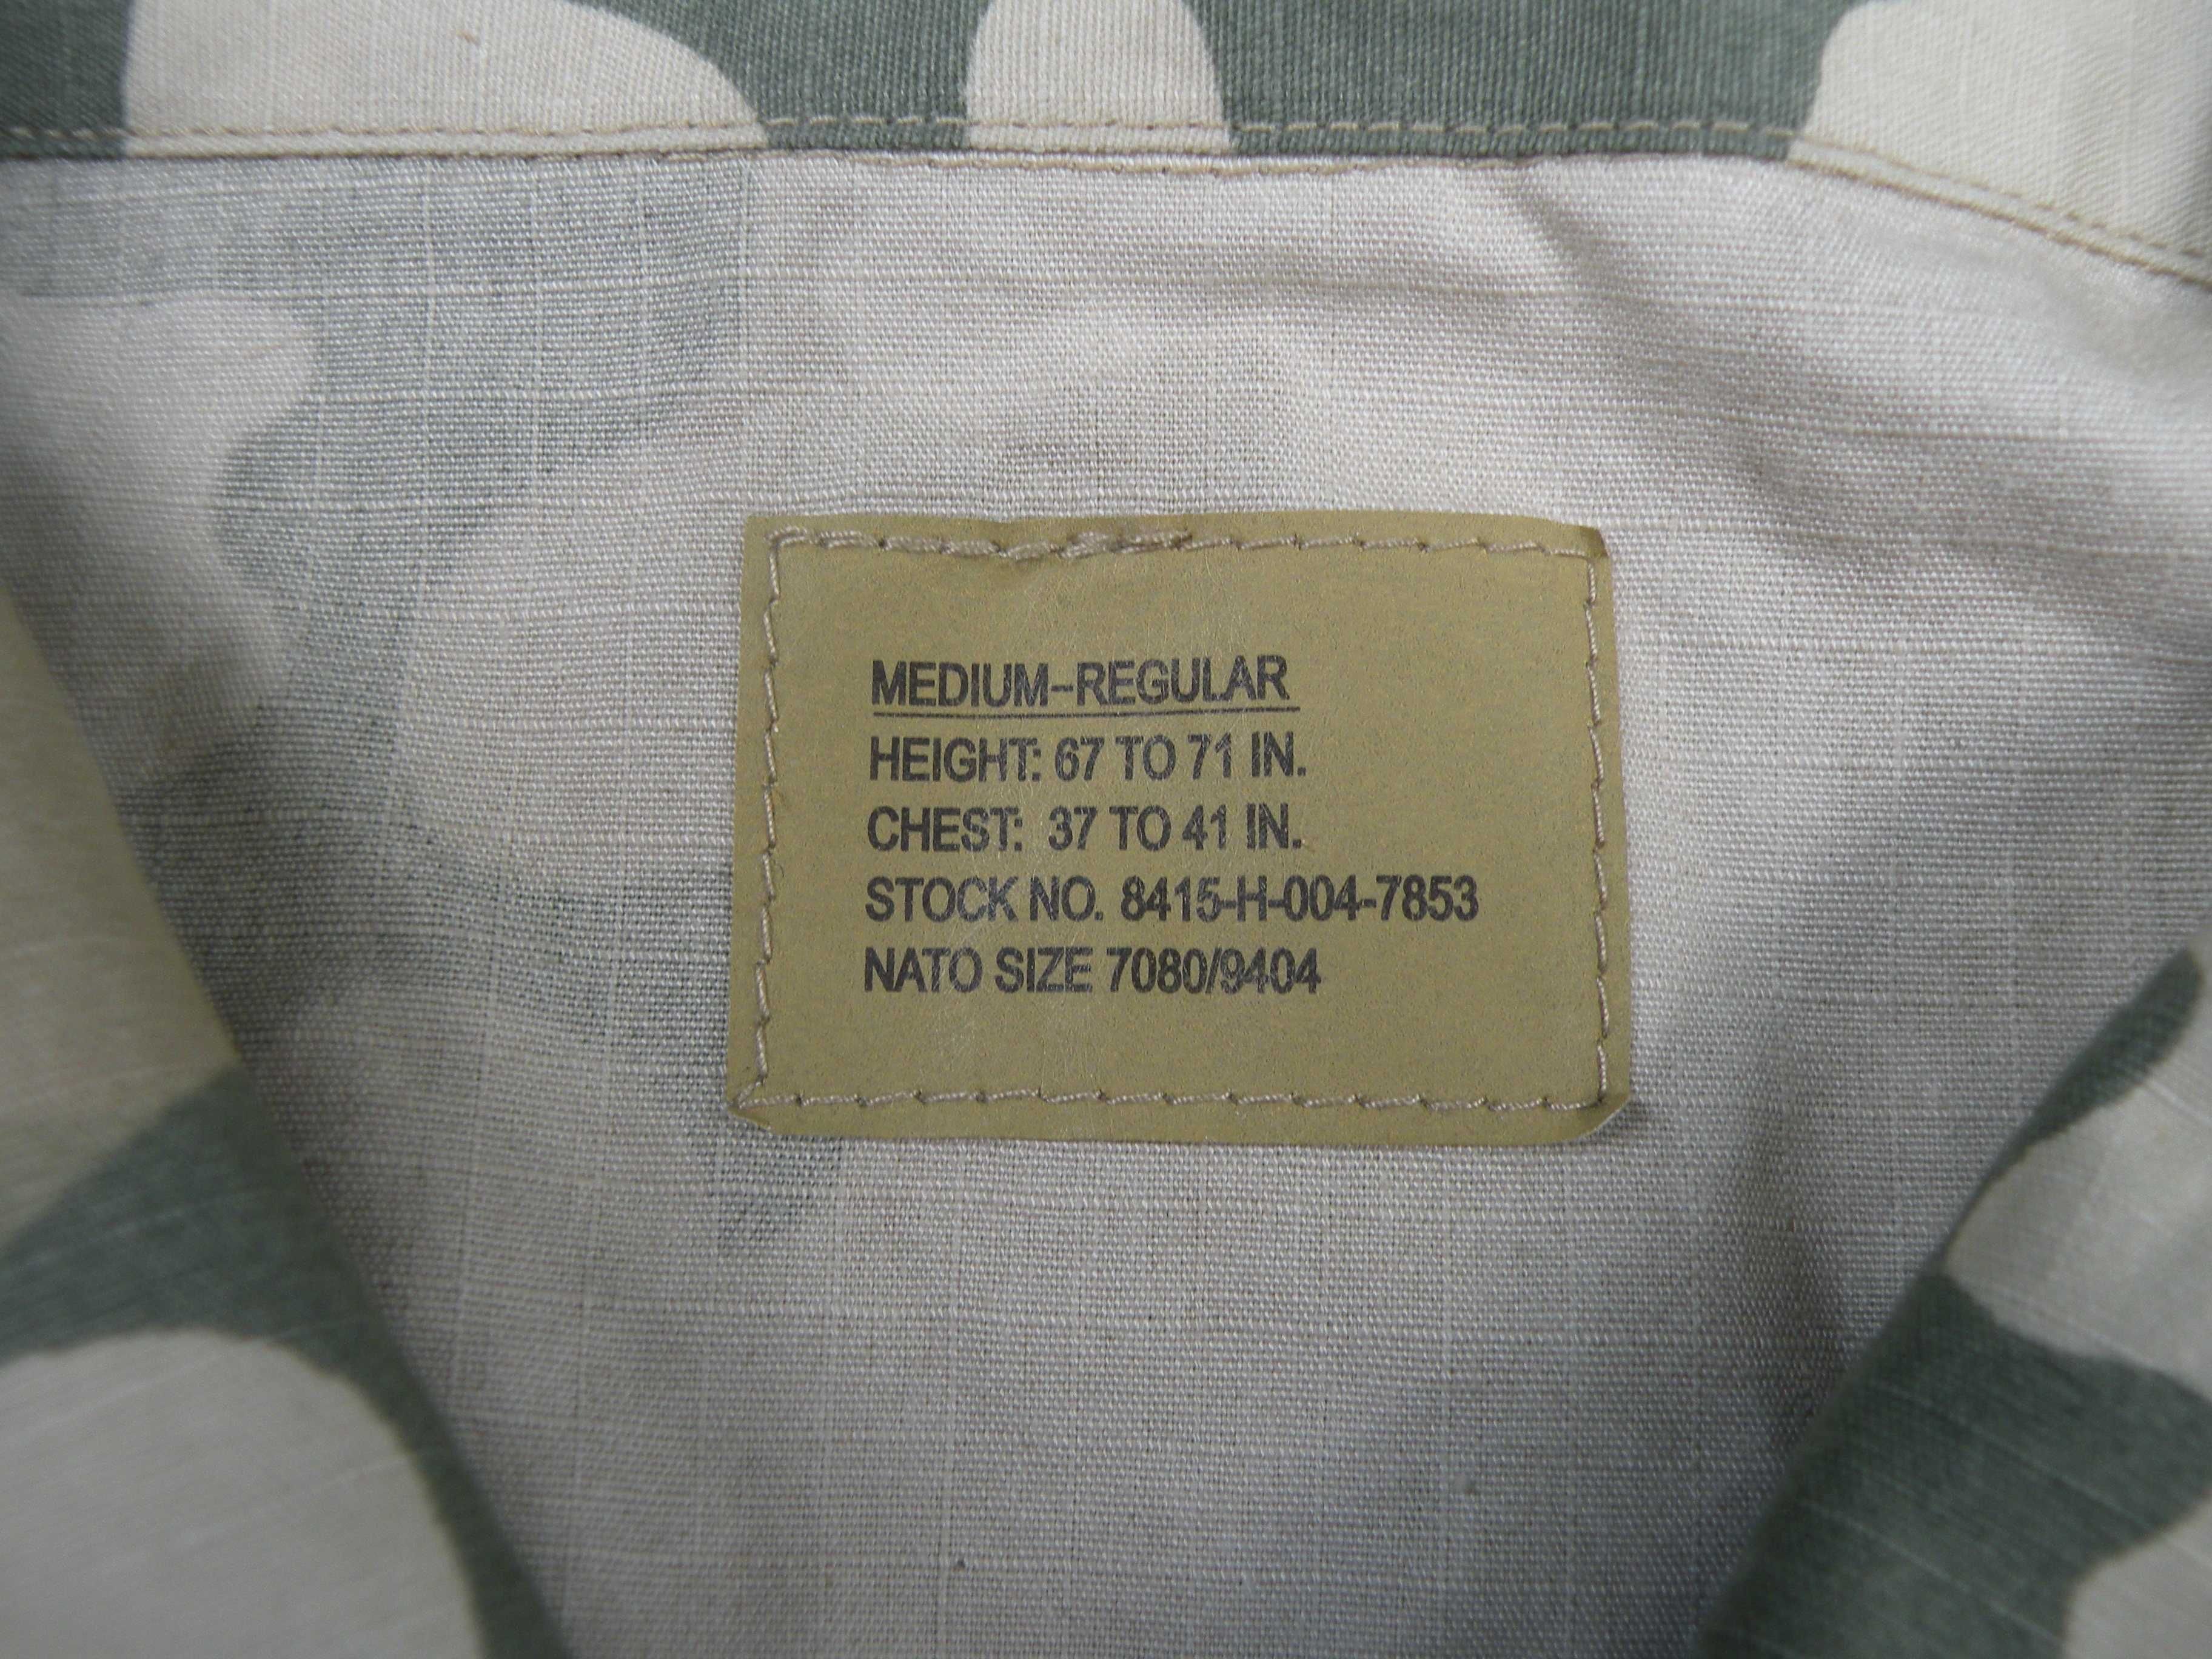 Bluza BDU wz.2000 medium regular cotton